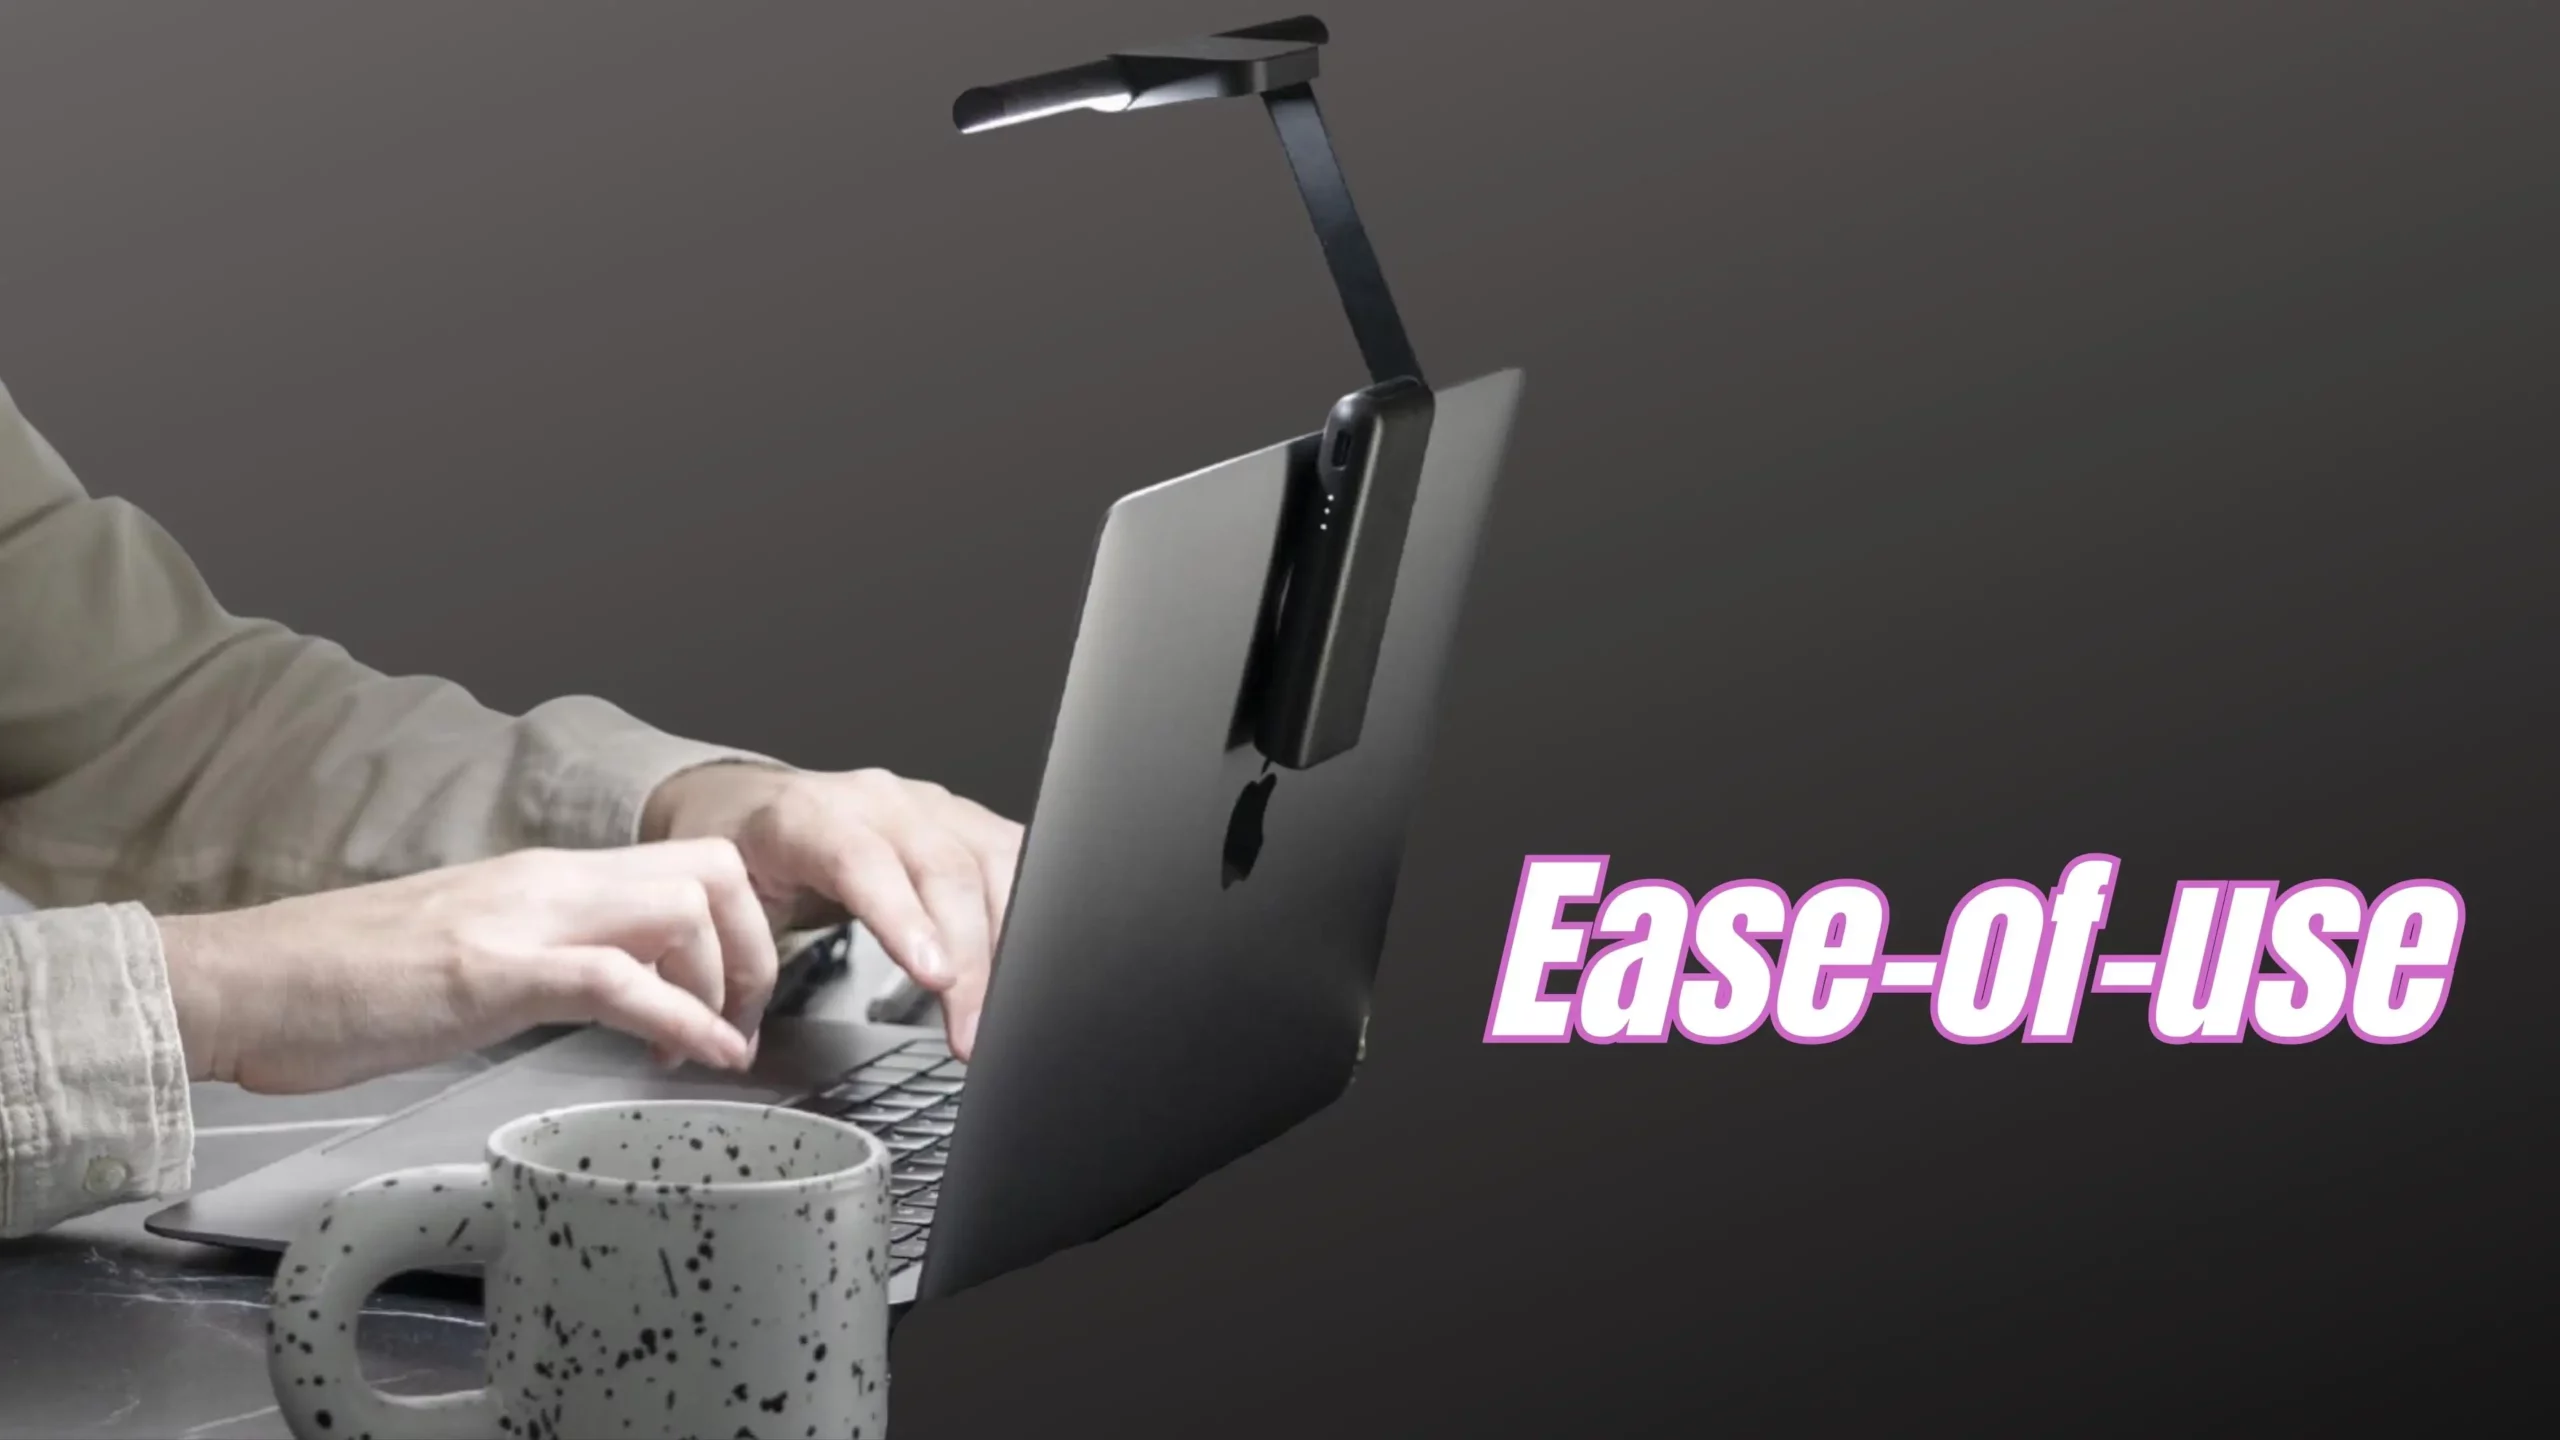 BenQ LaptopBar Ease-of-use